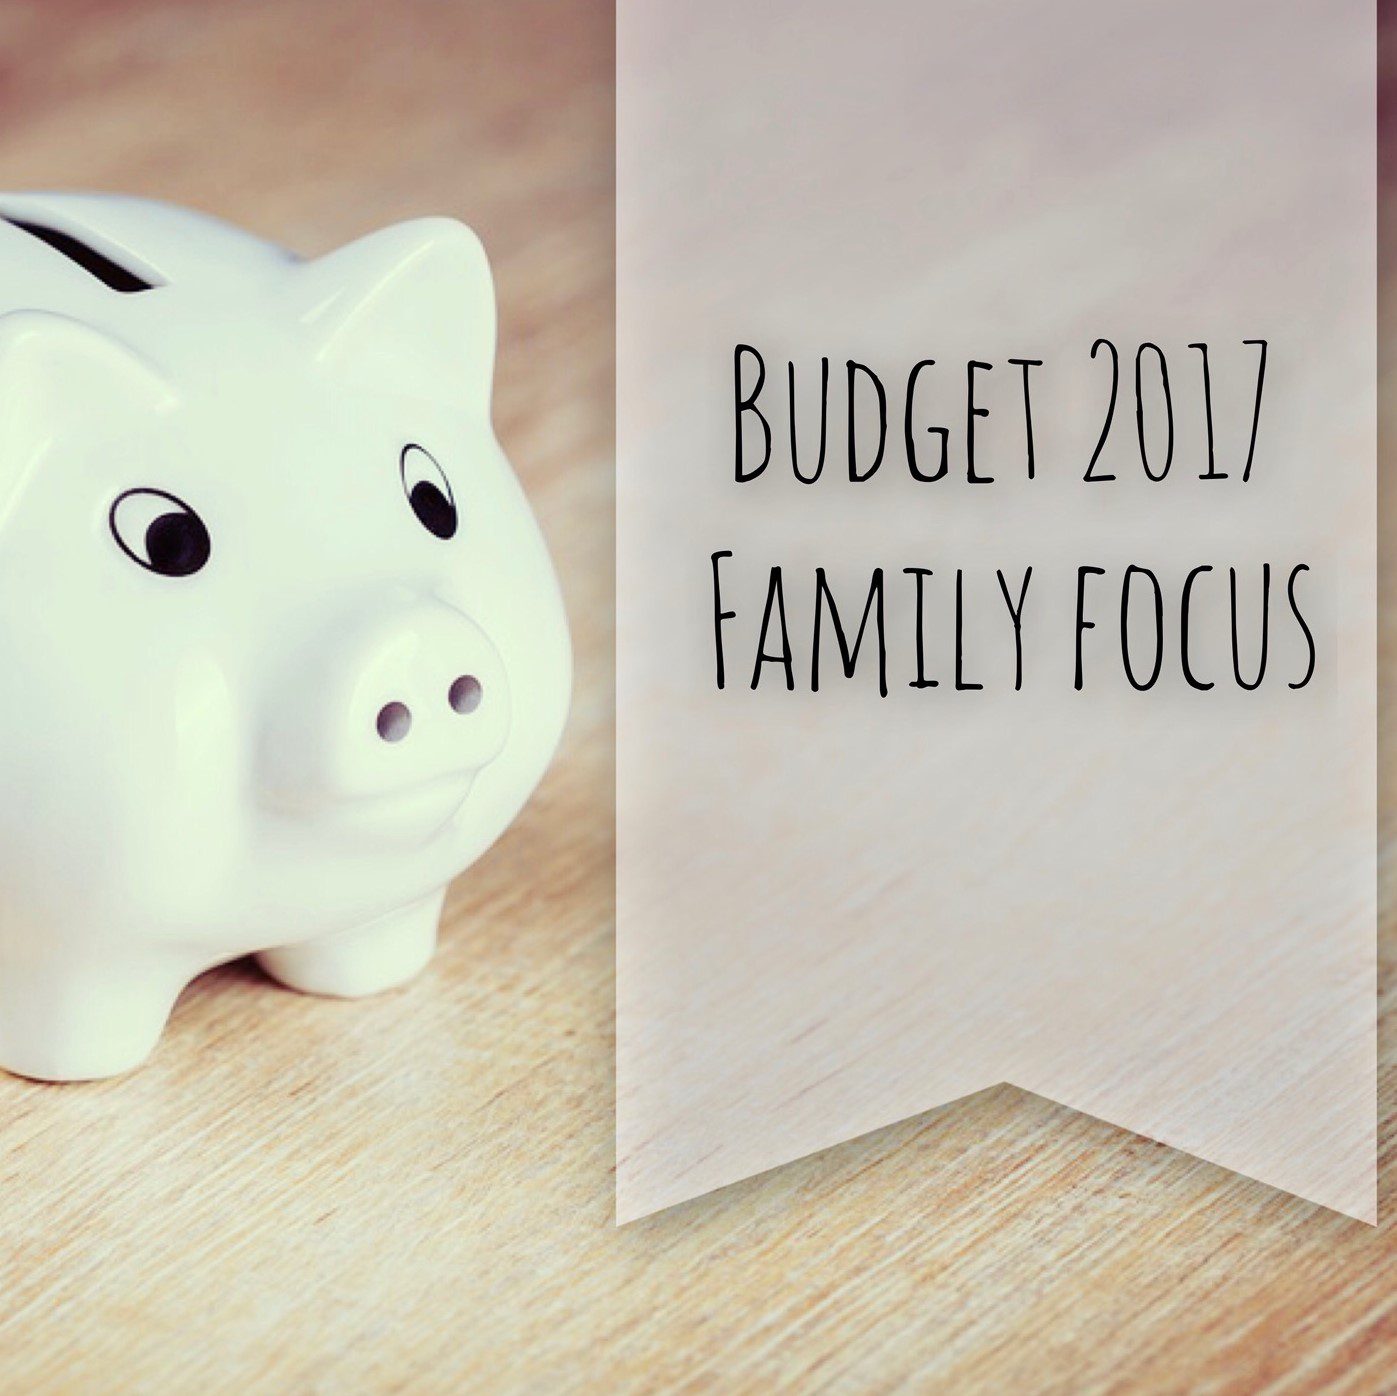 Budget 2017 – Family Focus